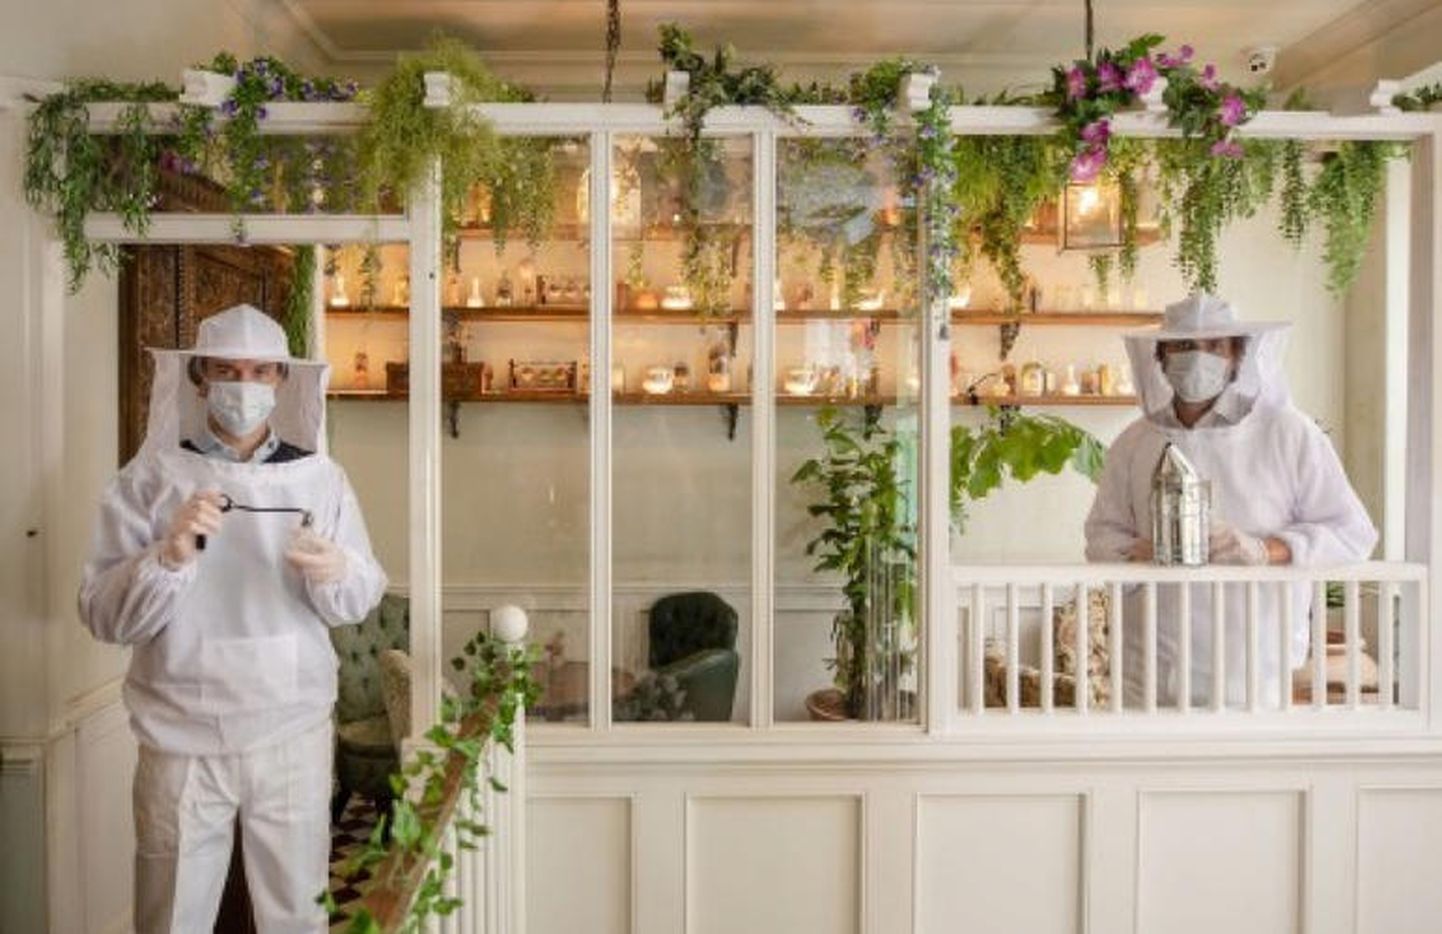 Работники лондонского бара в костюмах пчеловодов.